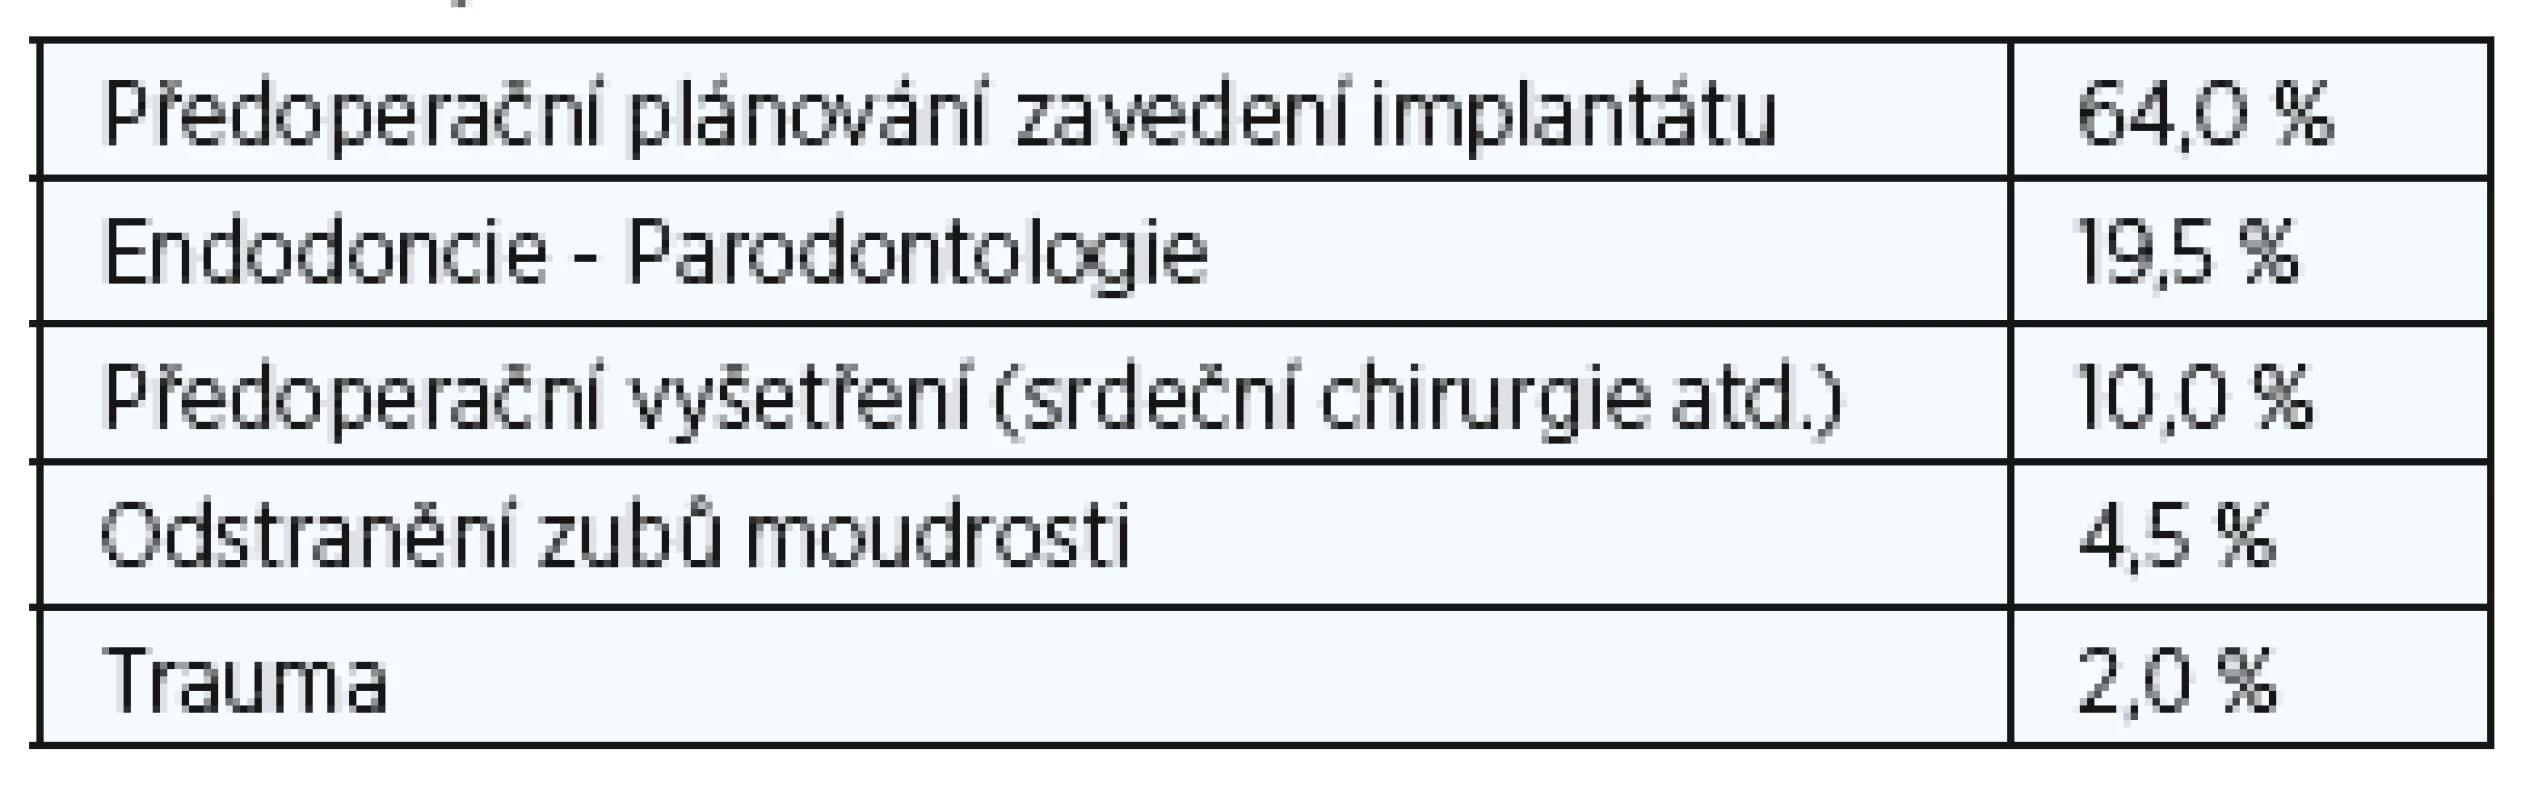 Nejčastější stomatologické indikace (založené na 899 CBCT studiích provedených ve dvou po sobě jdoucích měsících v roce 2012).